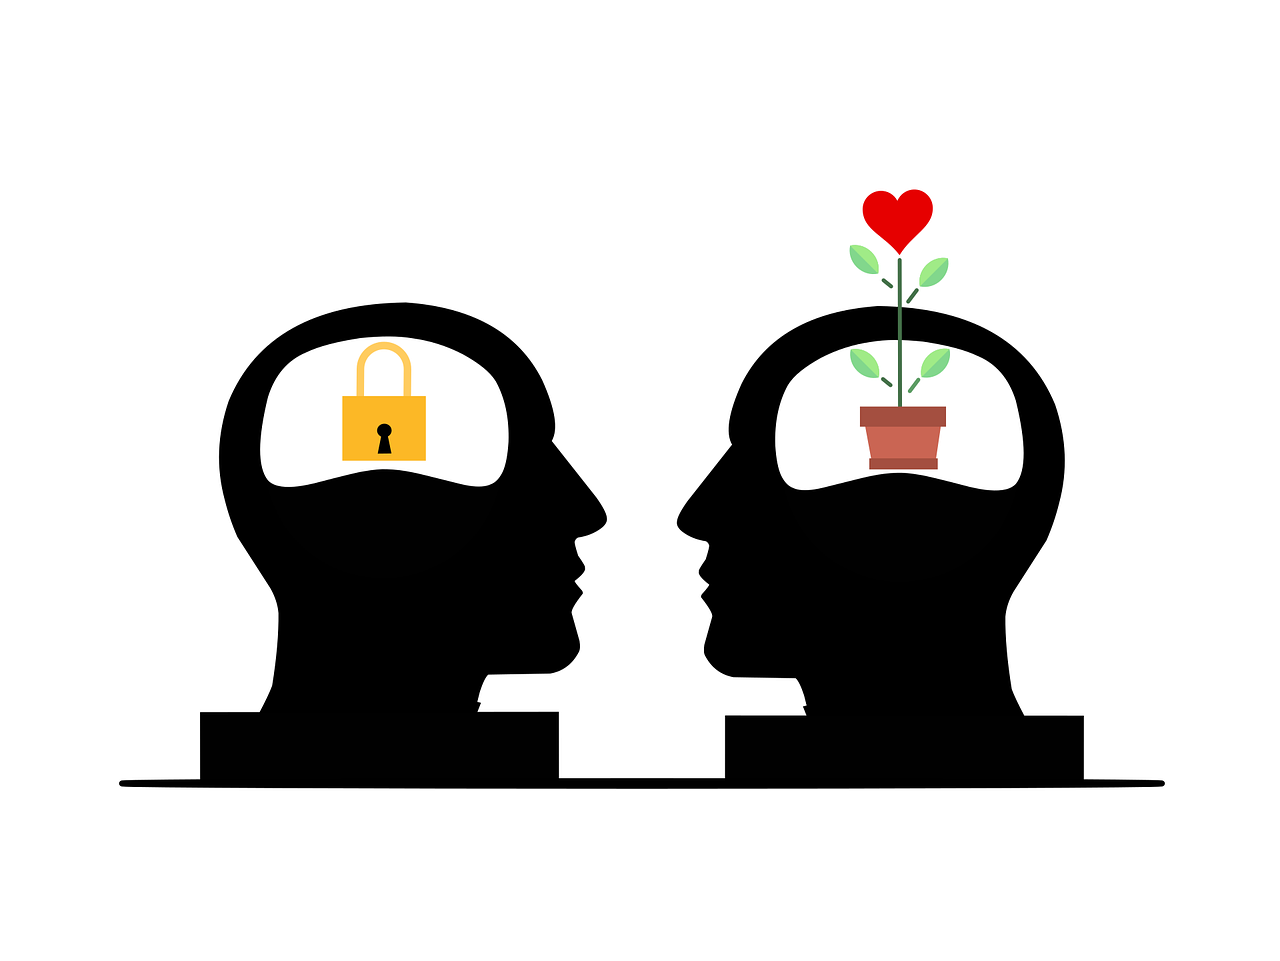 Auf dem Bild sieht man zwei Köpfe. Der eine Kopf hat ein Schloss an der Stelle des Gehirns. Der anderen hat einen Blumentopf an der Stelle. Das soll zwei verschiedene Mindsets darstellen und das man sein Mindset ändern kann.